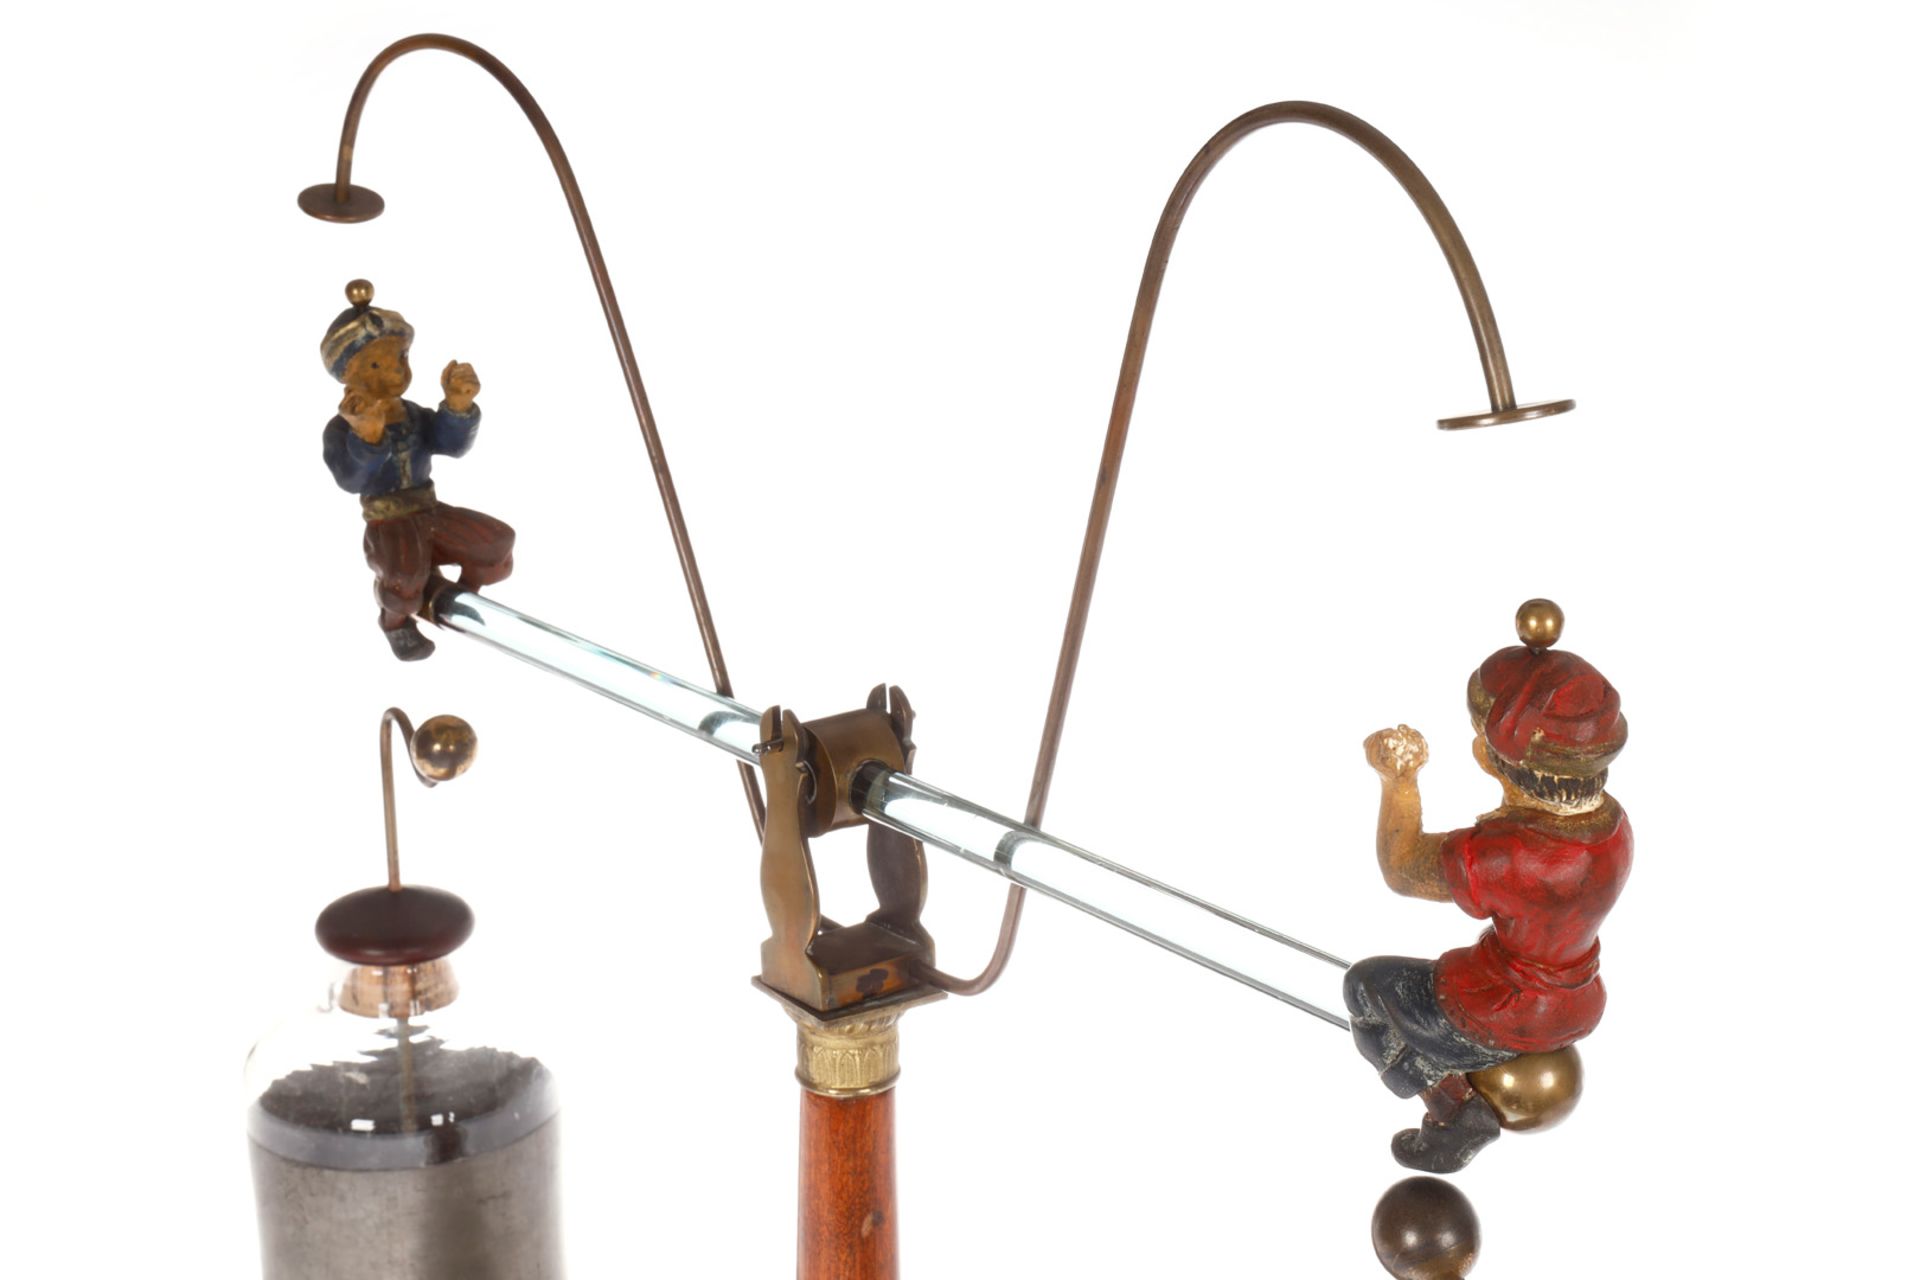 Historische elektrostatische Wippe, bedeutendes frühes technisches Spielzeug um 1810, Holzsockel, - Bild 8 aus 9